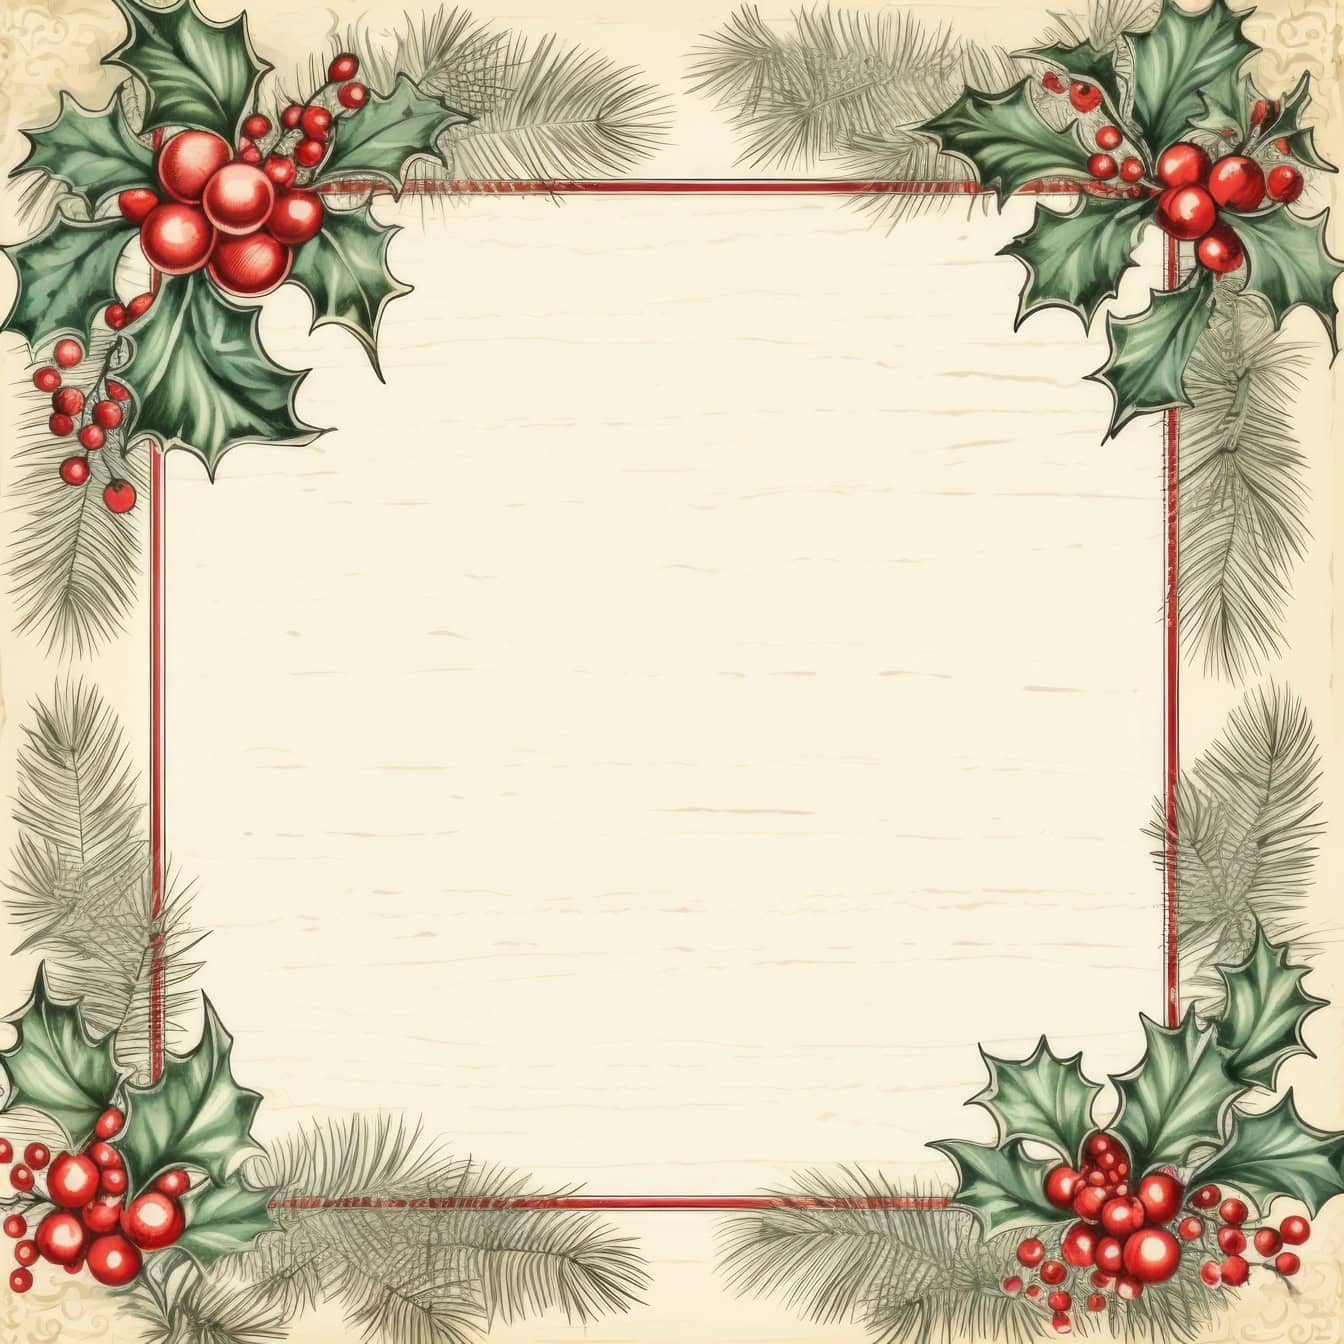 Predložak novogodišnje čestitke u retro stilu s kvadratnim okvirom s vijencem božikovine s bobicama i borovim grančicama